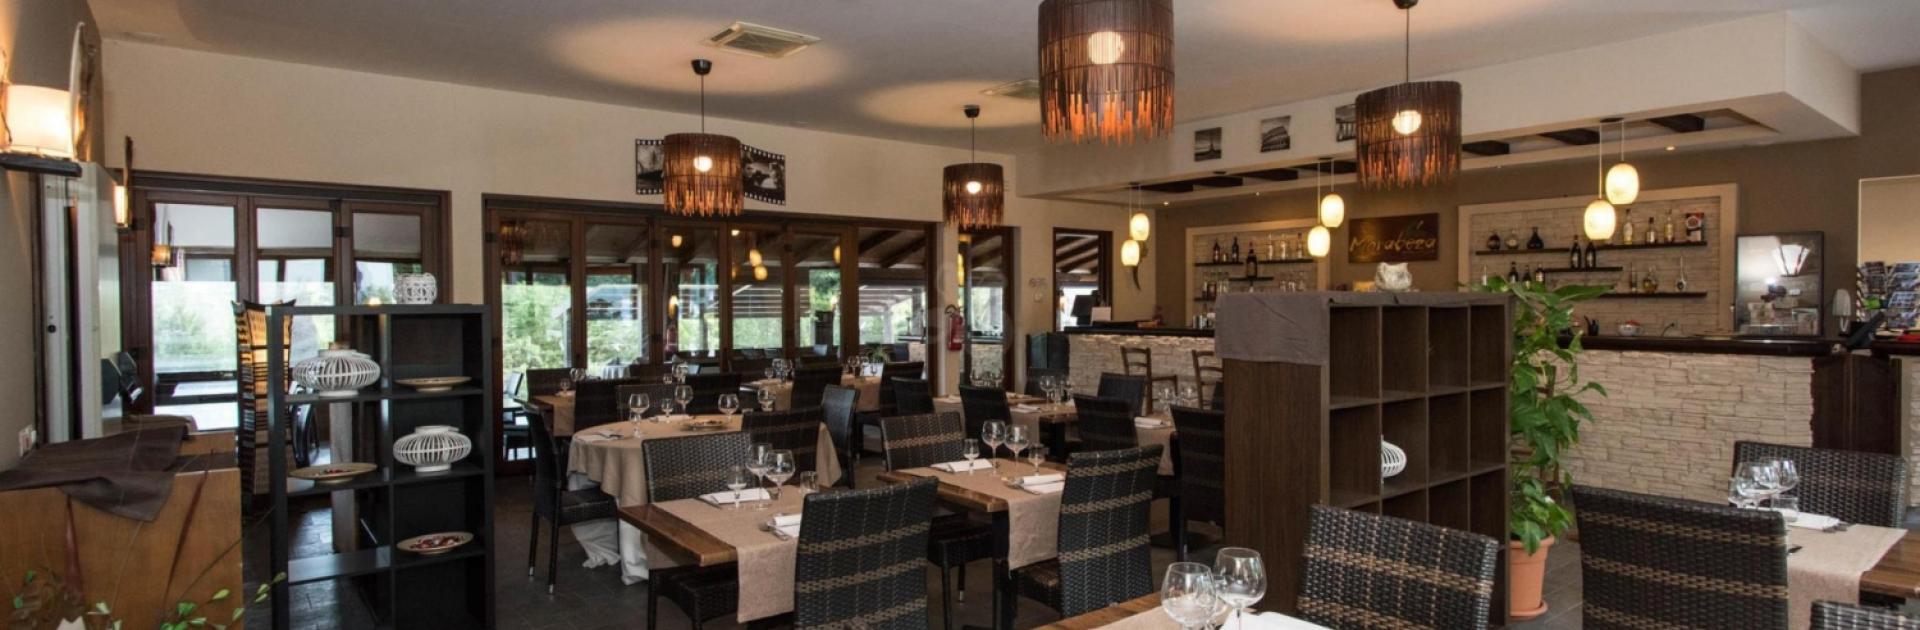 Modernes Restaurant mit eleganter Dekoration, Holzmöbeln und stimmungsvoller Beleuchtung.